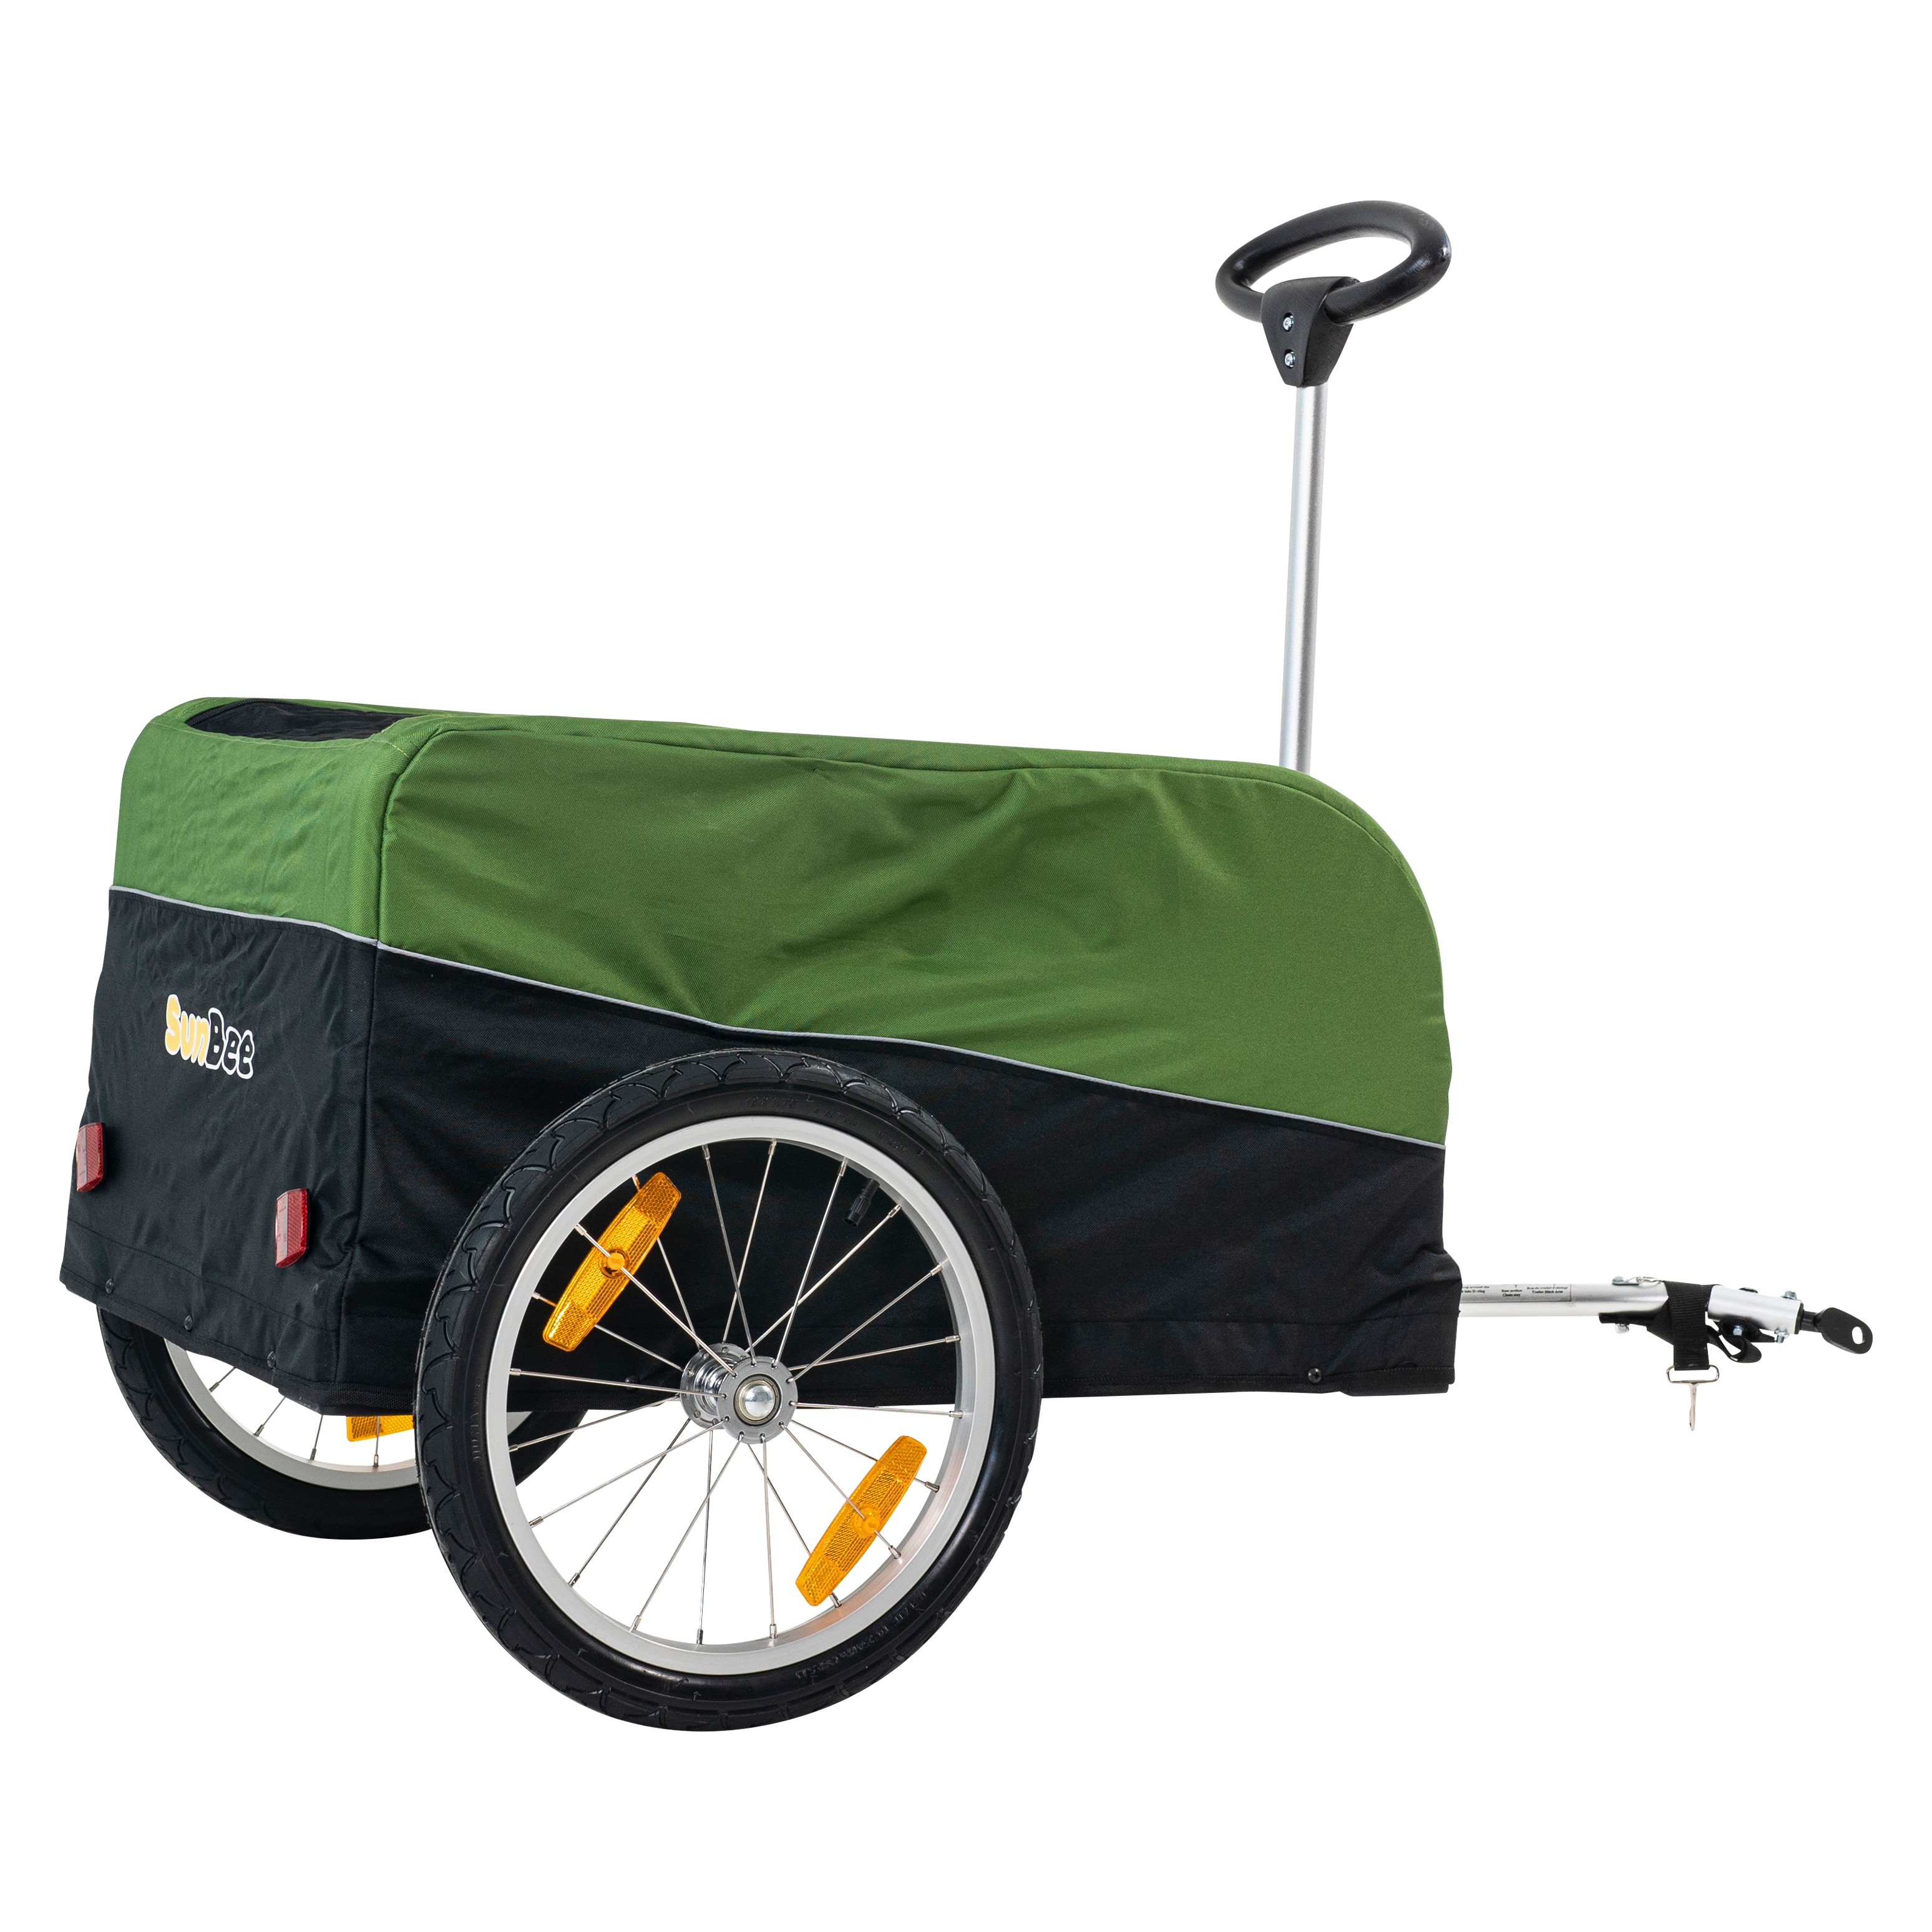 Cykelvagn SunBee Transporter - Grön/Svart